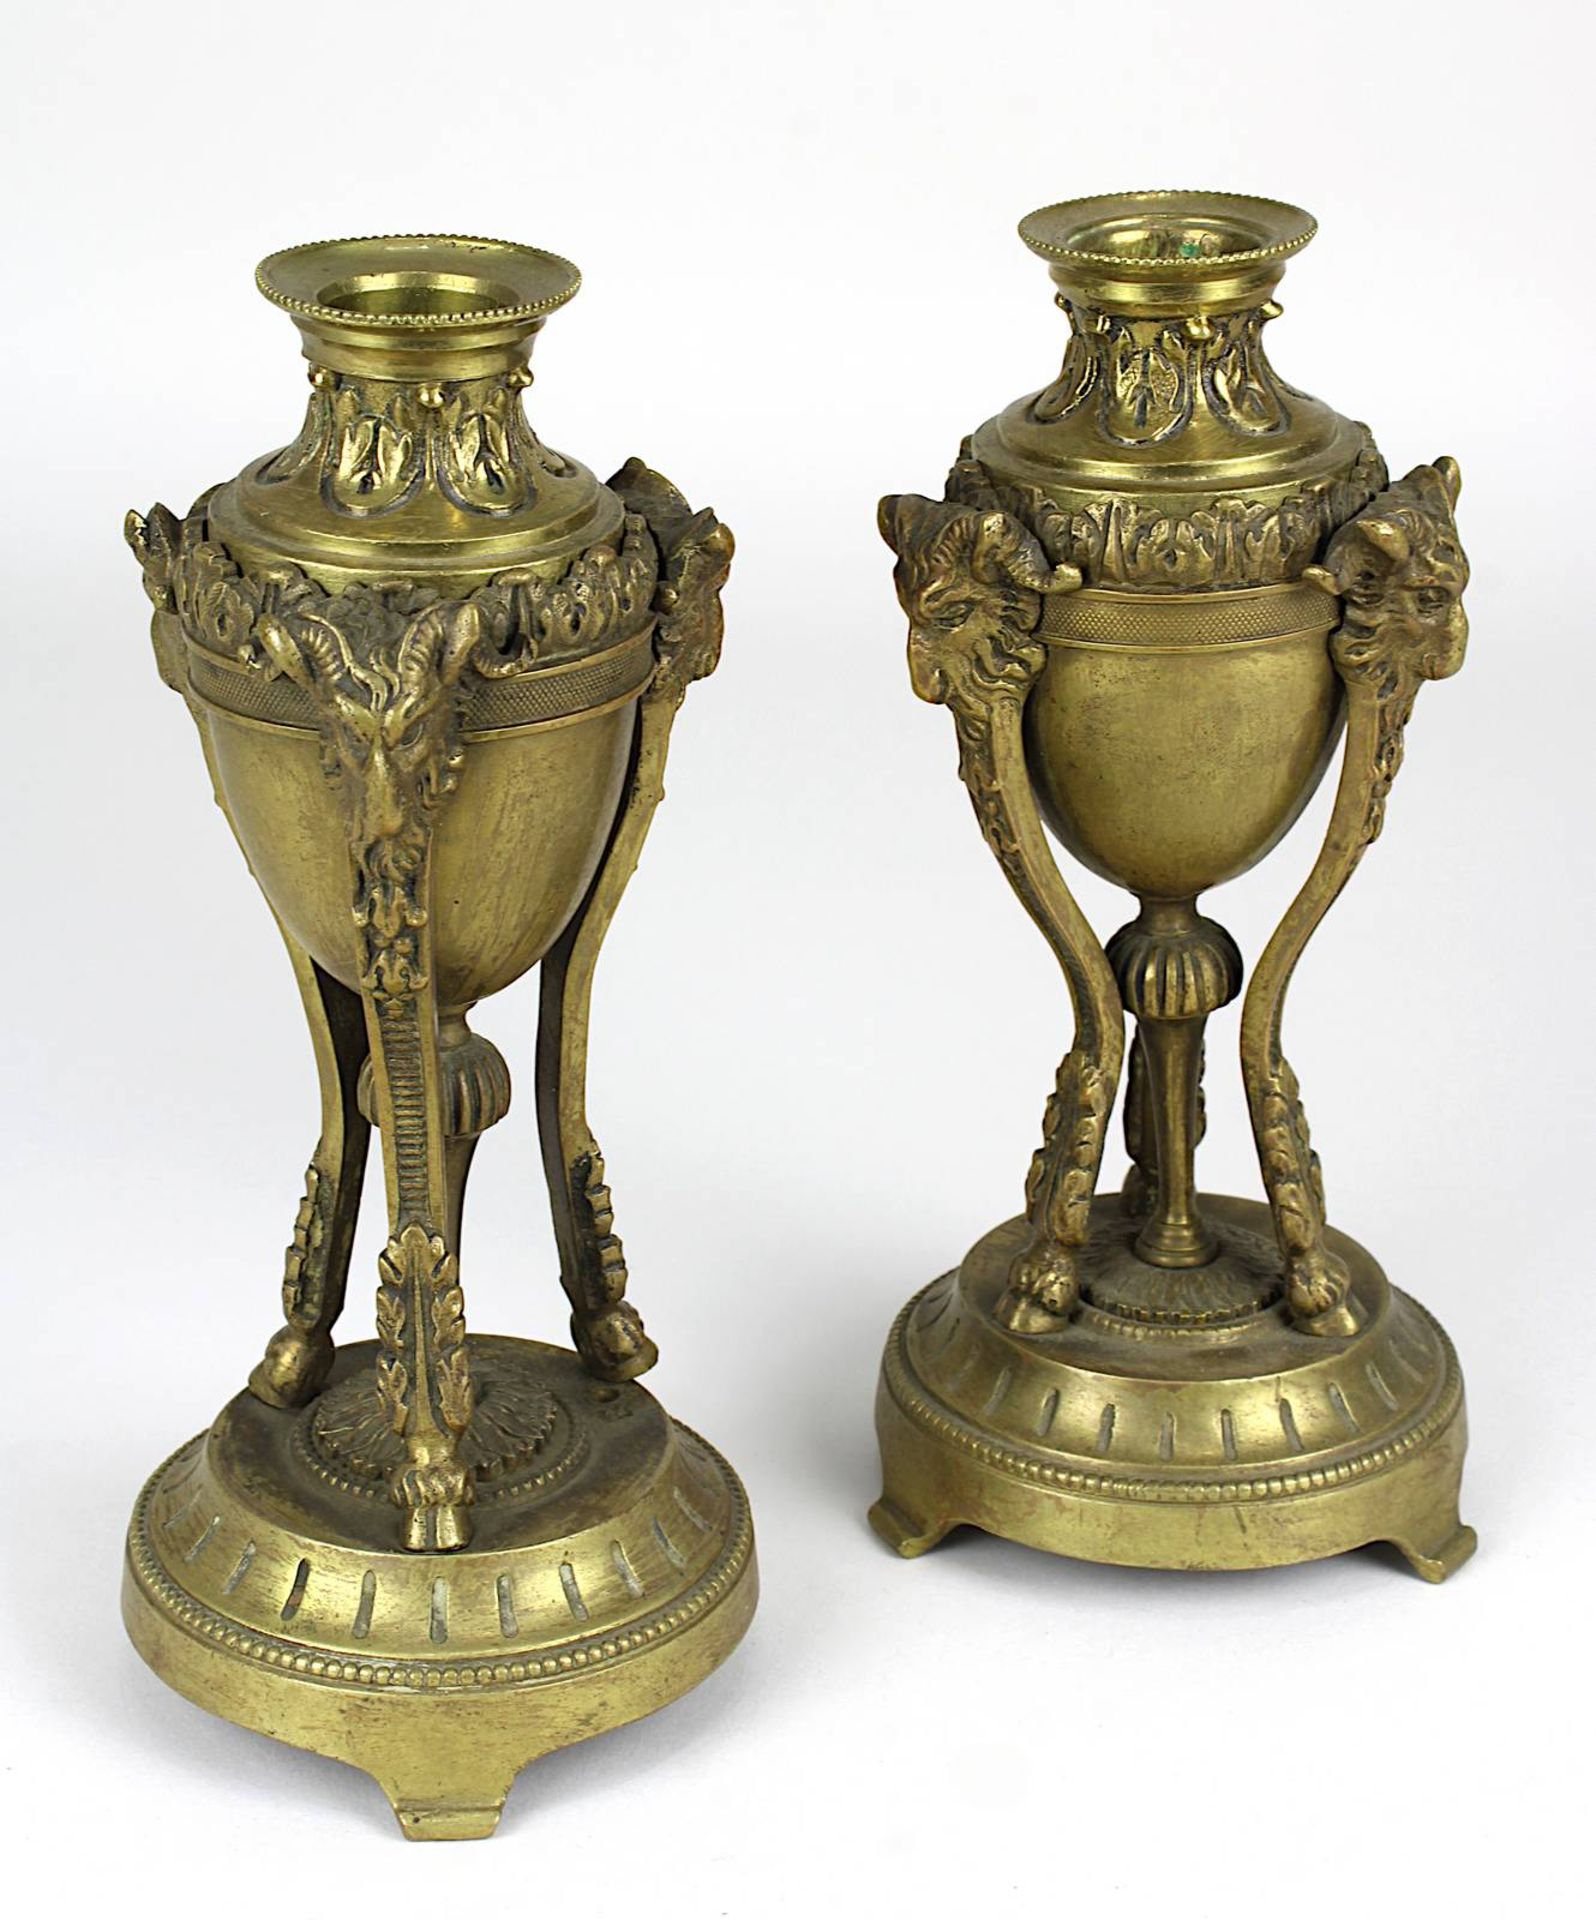 Paar Cassolettes im Empire - Stil, Frankreich 2.H.19.Jh., Bronze mit Resten von Vergoldung,